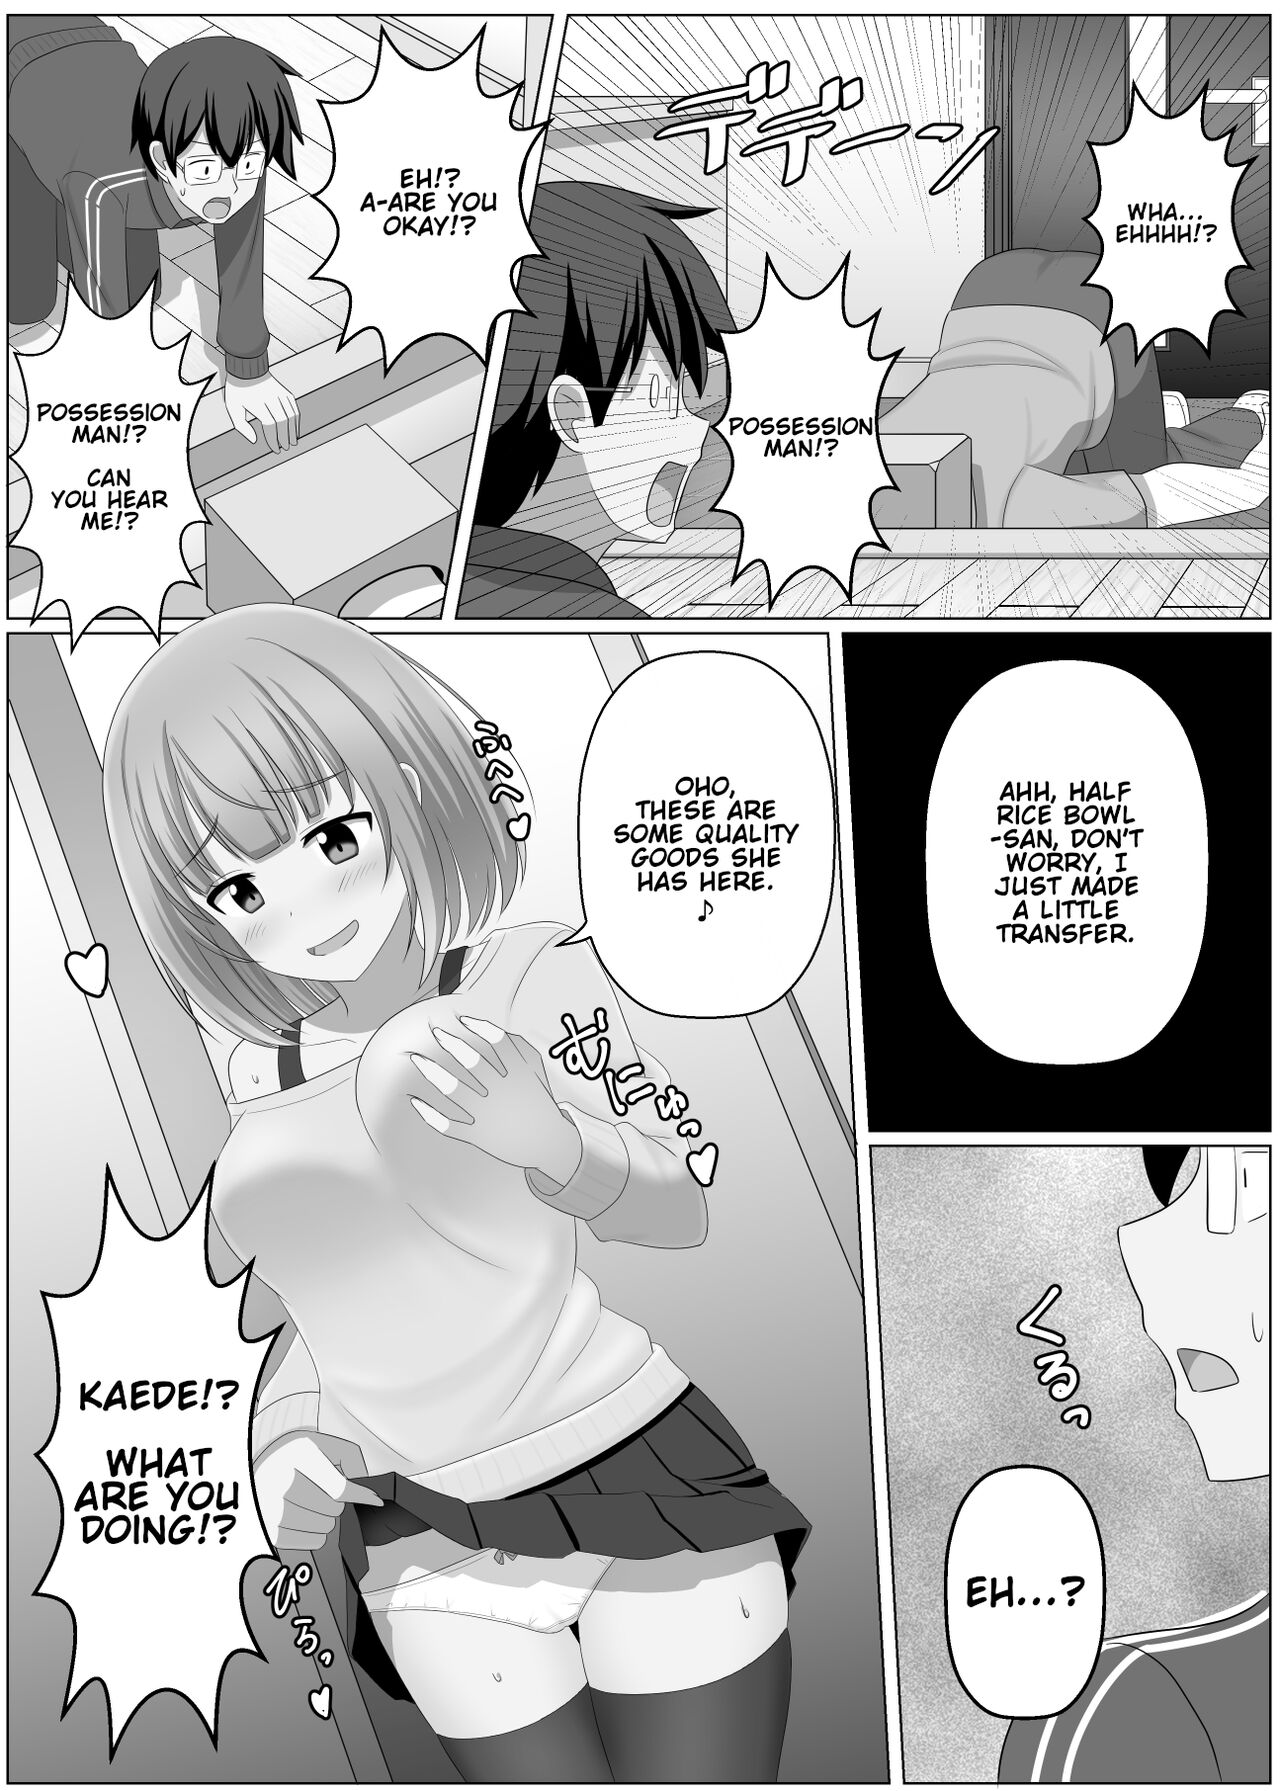 Possession manga hentai